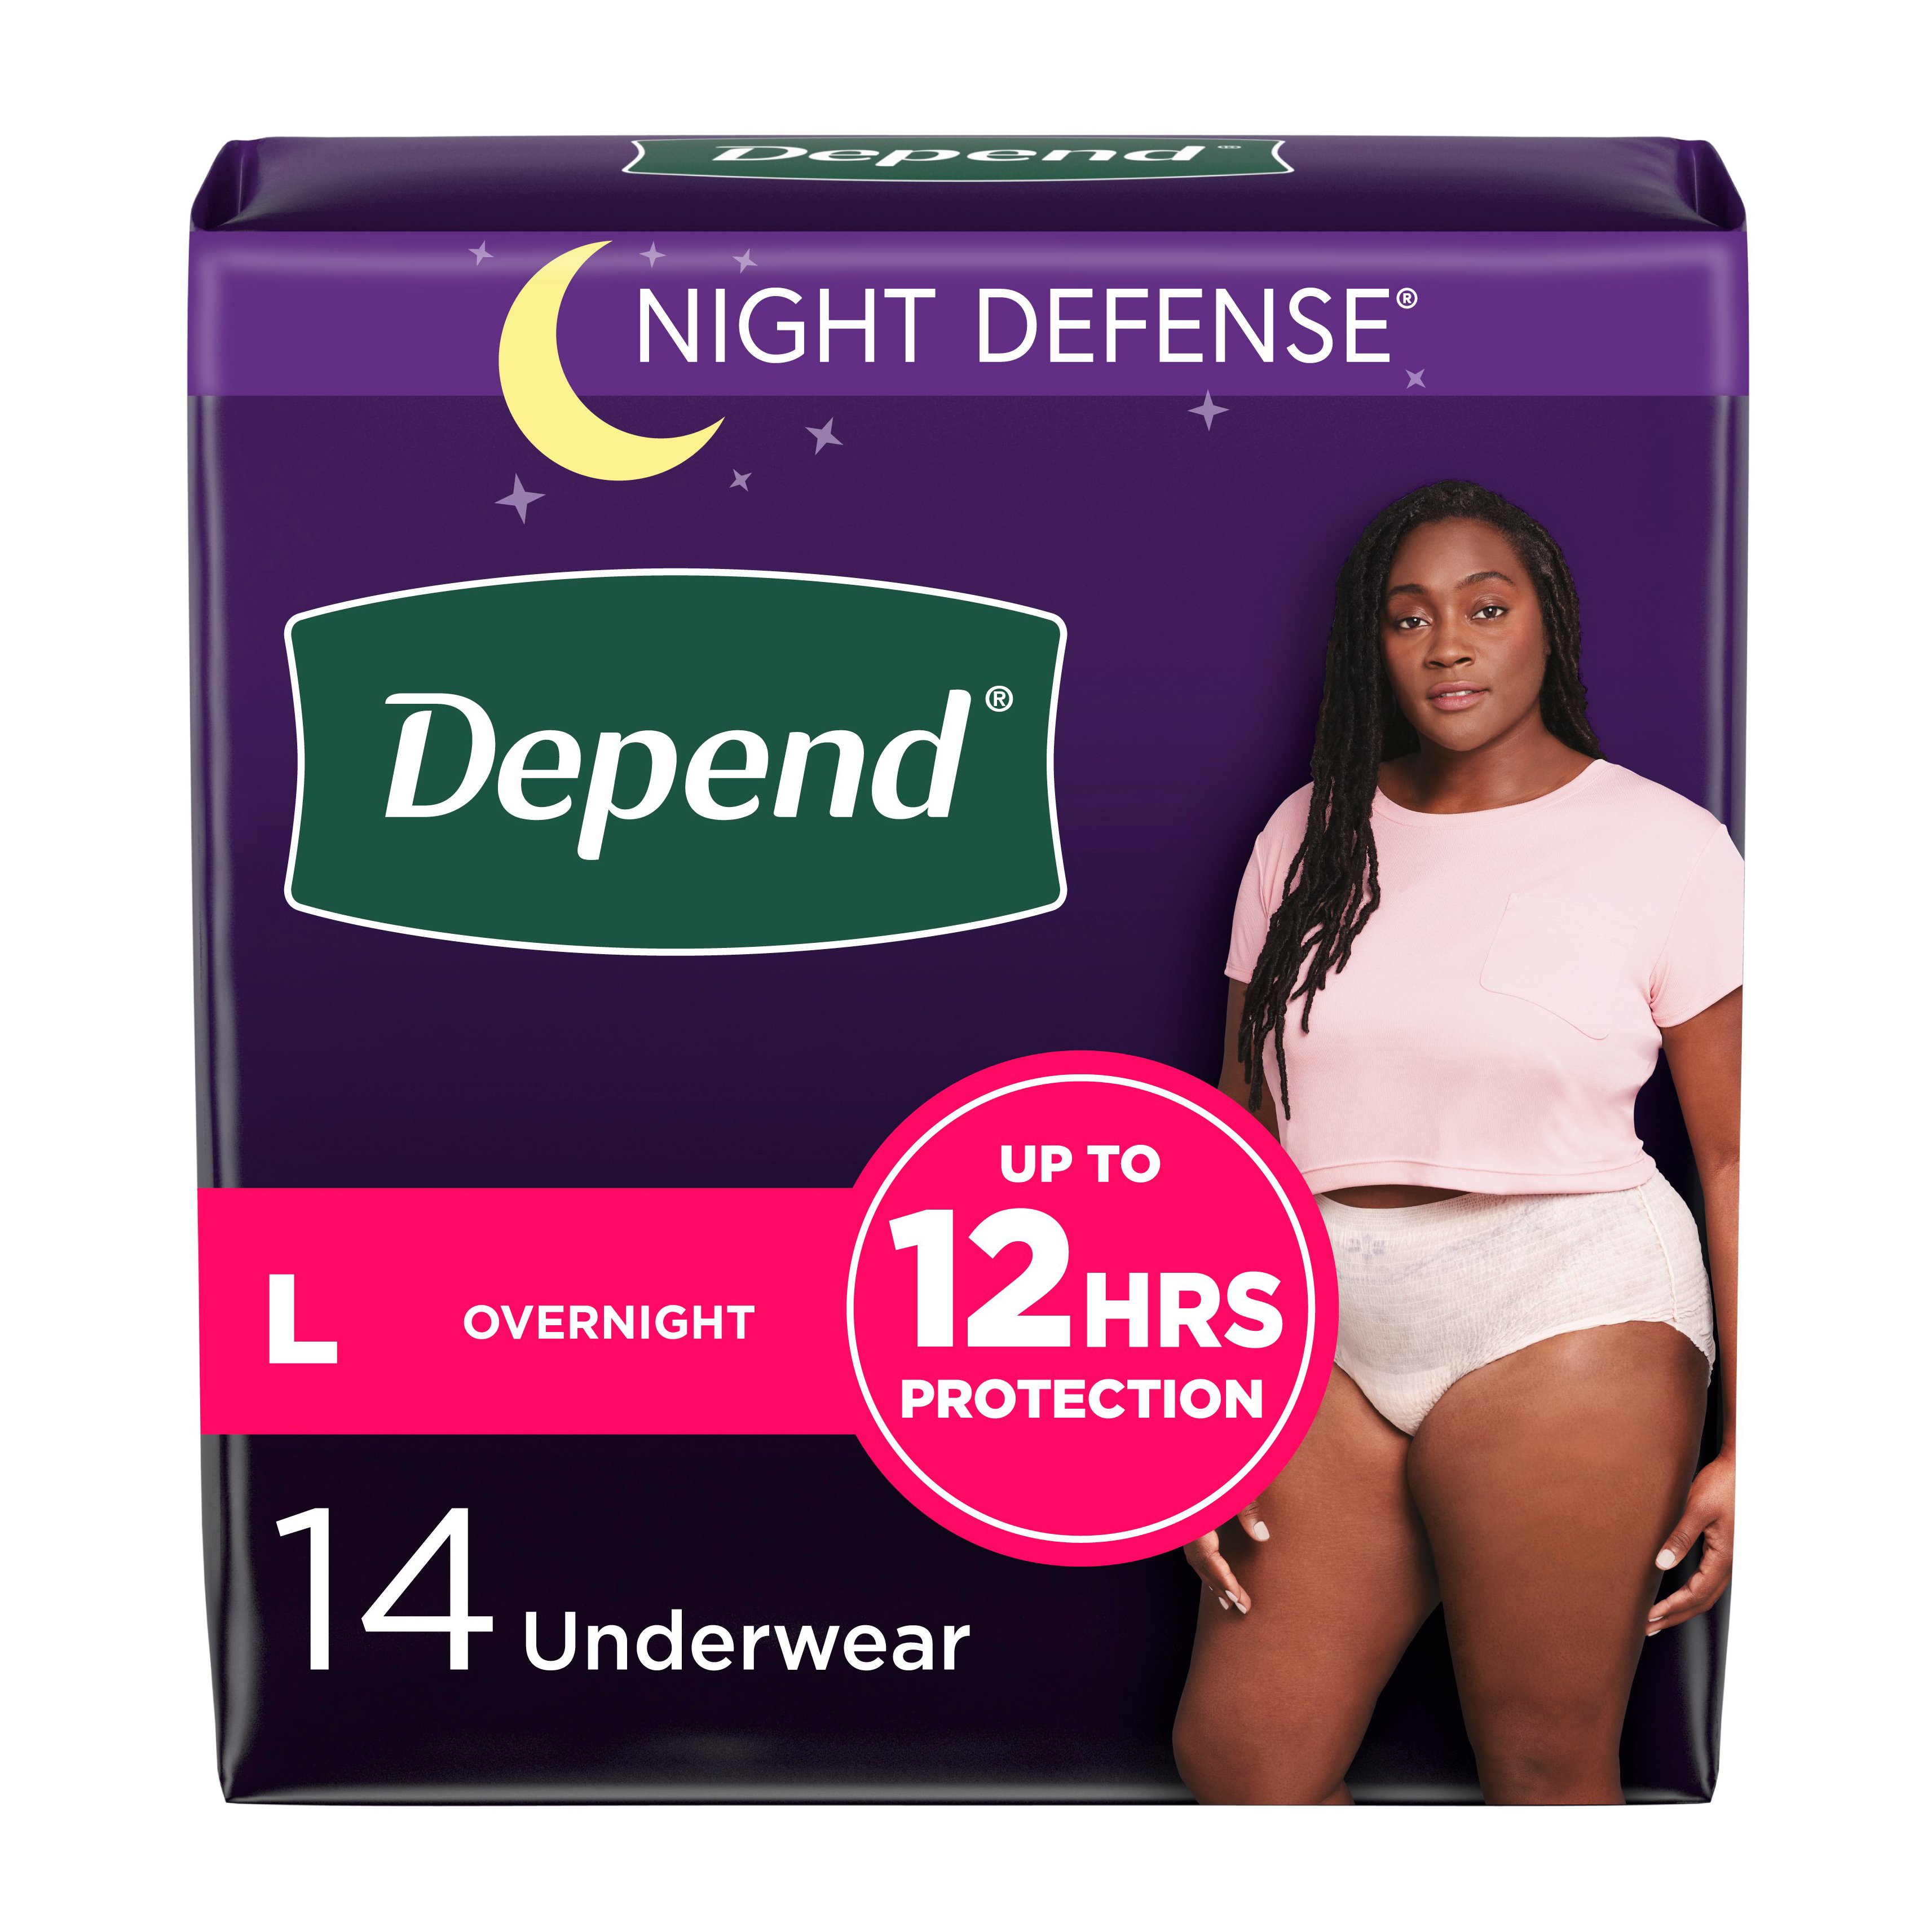  TENA Incontinence & Postpartum Underwear for Women